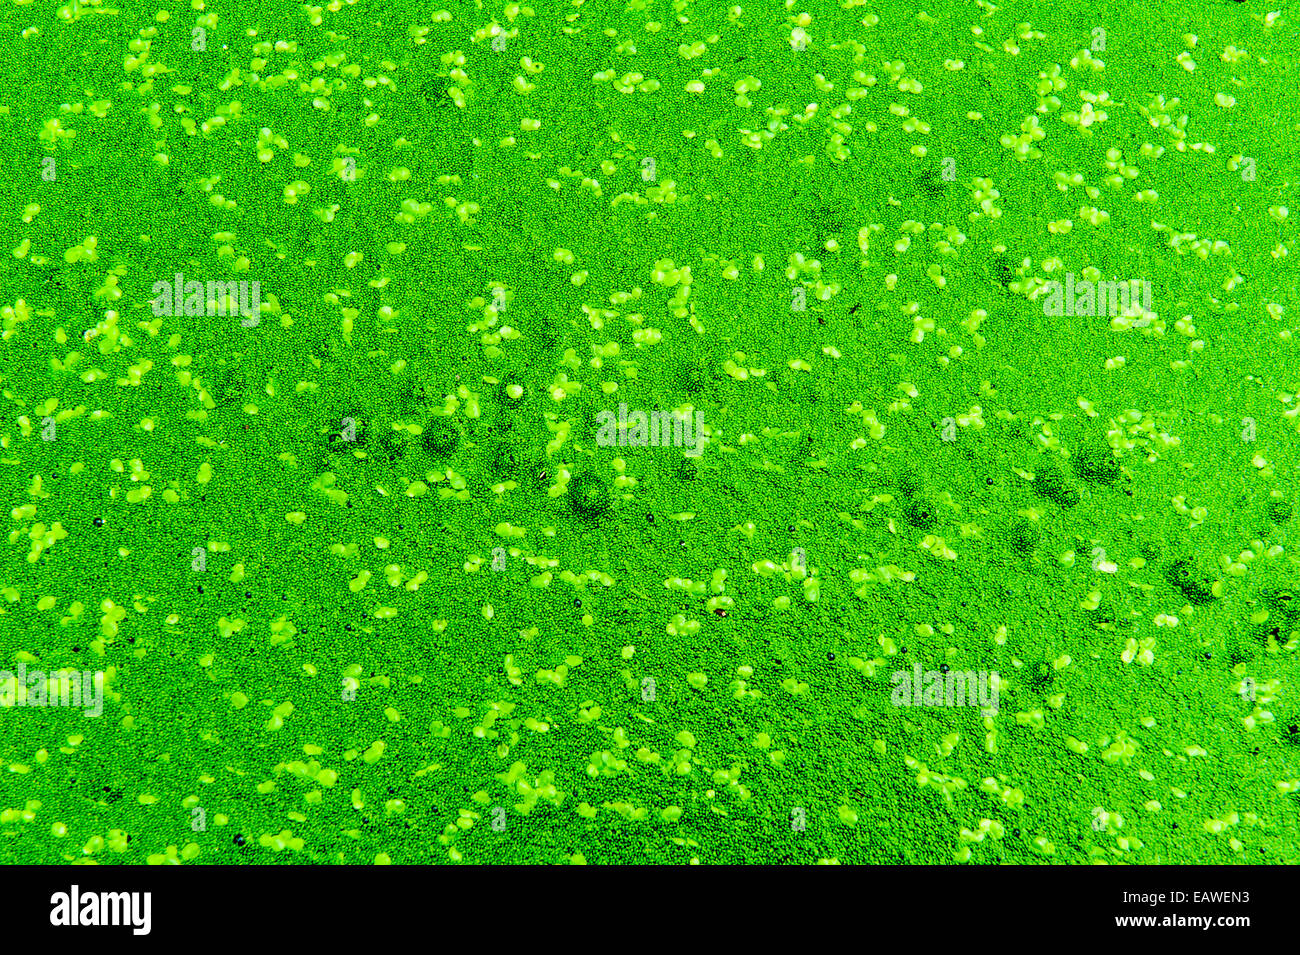 Piante acquatiche e alghe coprire la superficie dell'acqua di un laghetto in giardino. Foto Stock